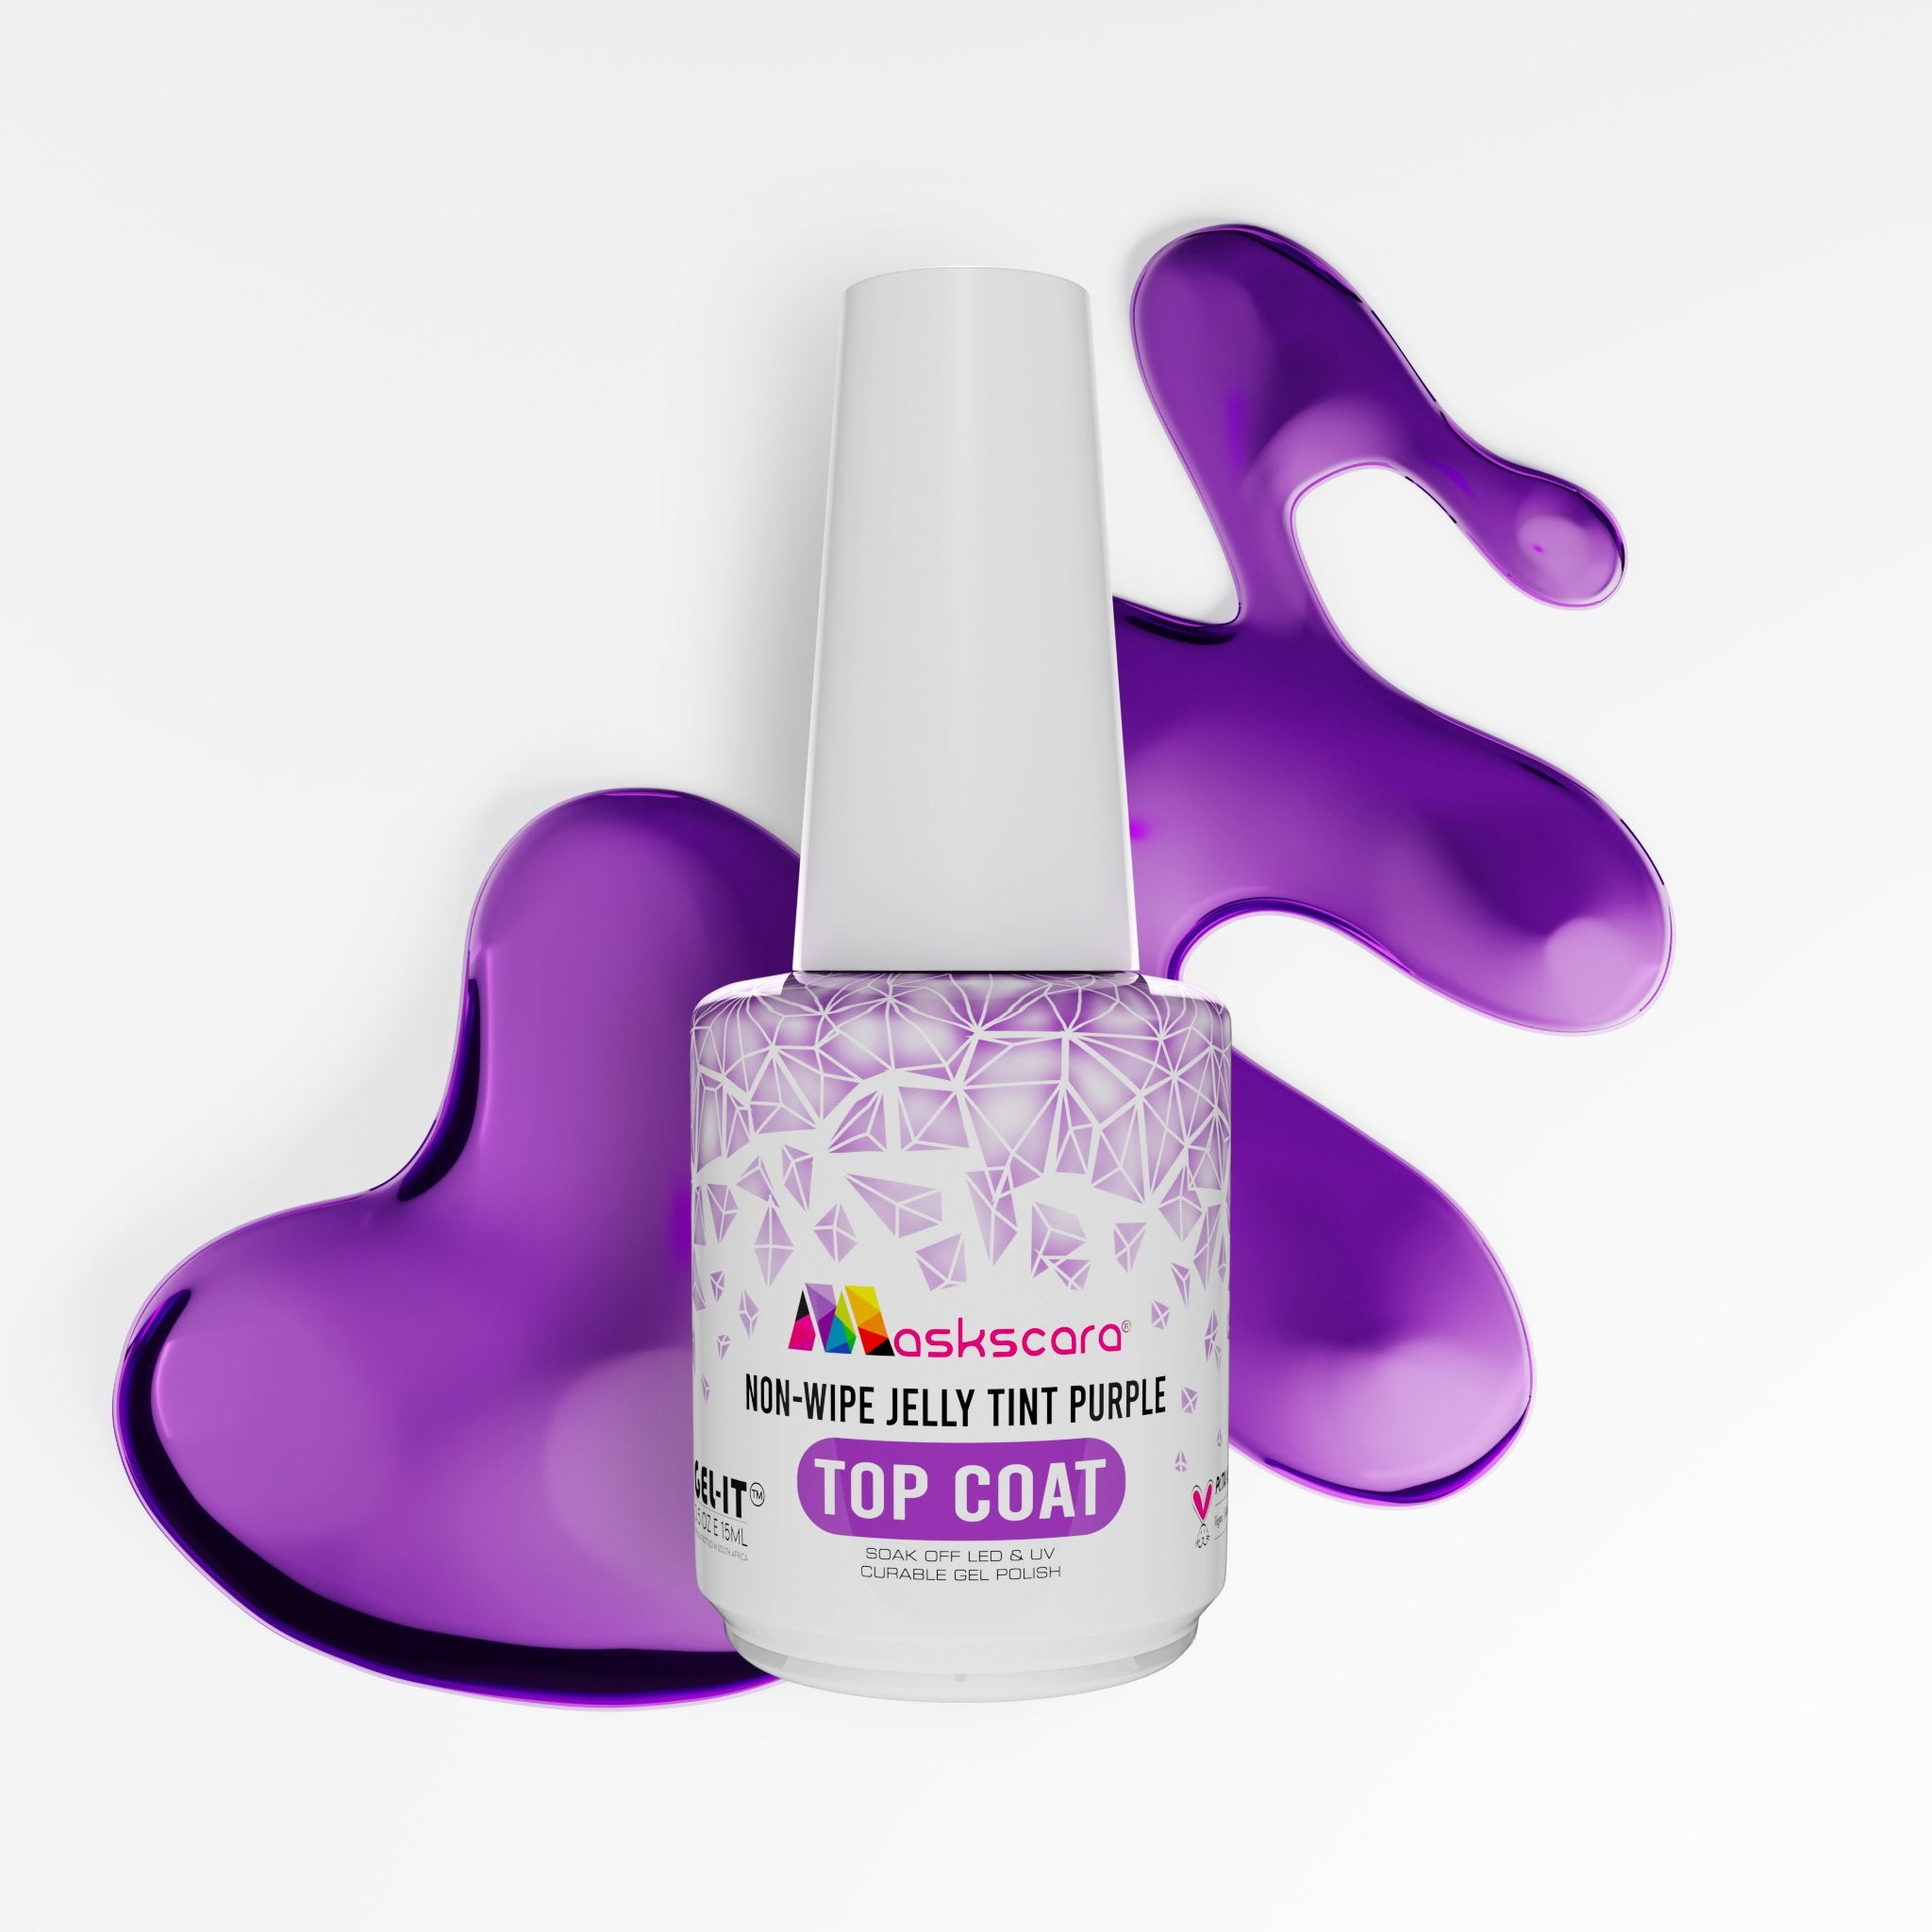 <img scr = “Maskscara Non Wipe Top Coat - Purple Jelly Tint.jpg” alt = “Purple Jelly Tint Top Coat by the brand Maskscara”>